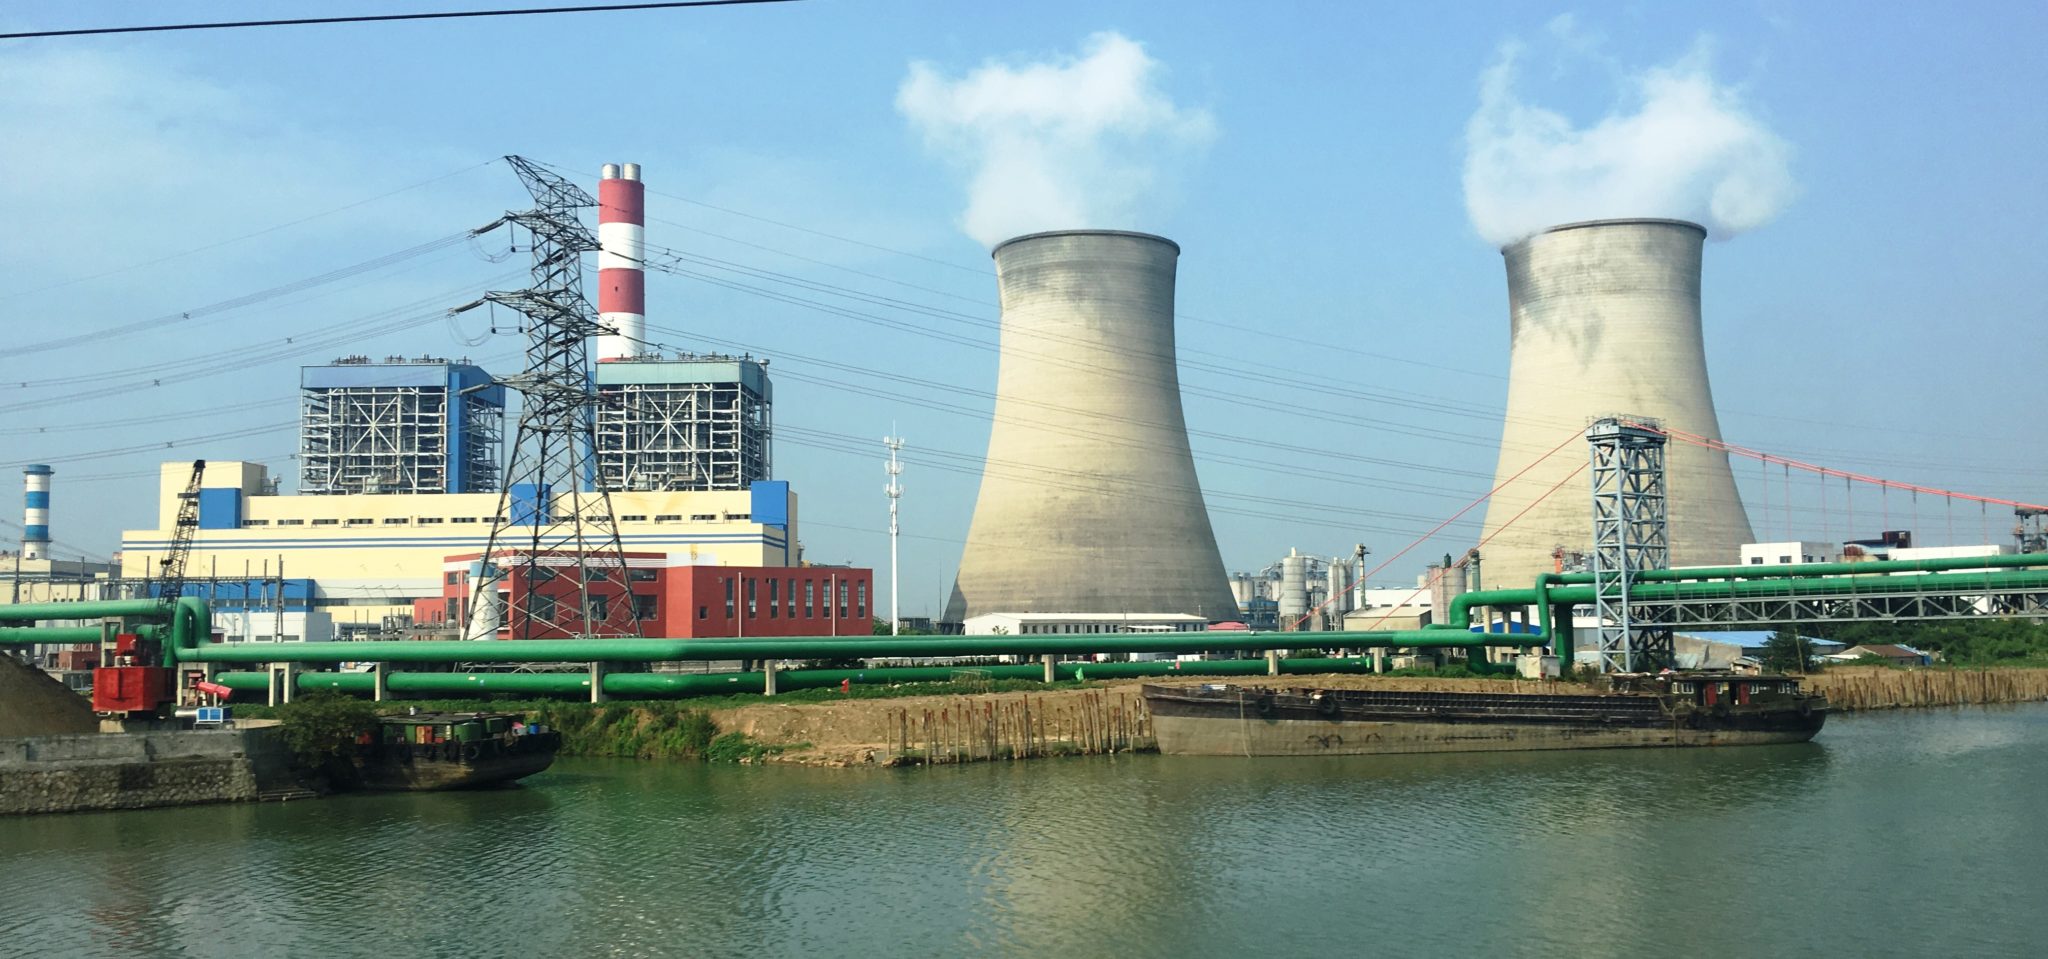 <p>(image: <a href="https://upload.wikimedia.org/wikipedia/commons/3/30/Jiangsu_Suzhou_Xiangcheng_-_Yuechengli_area_-_Wangyu_river_IMG_7172_Huadian_Wangting_CCGT_Power_Plant.jpg">wikimedia</a>)</p>